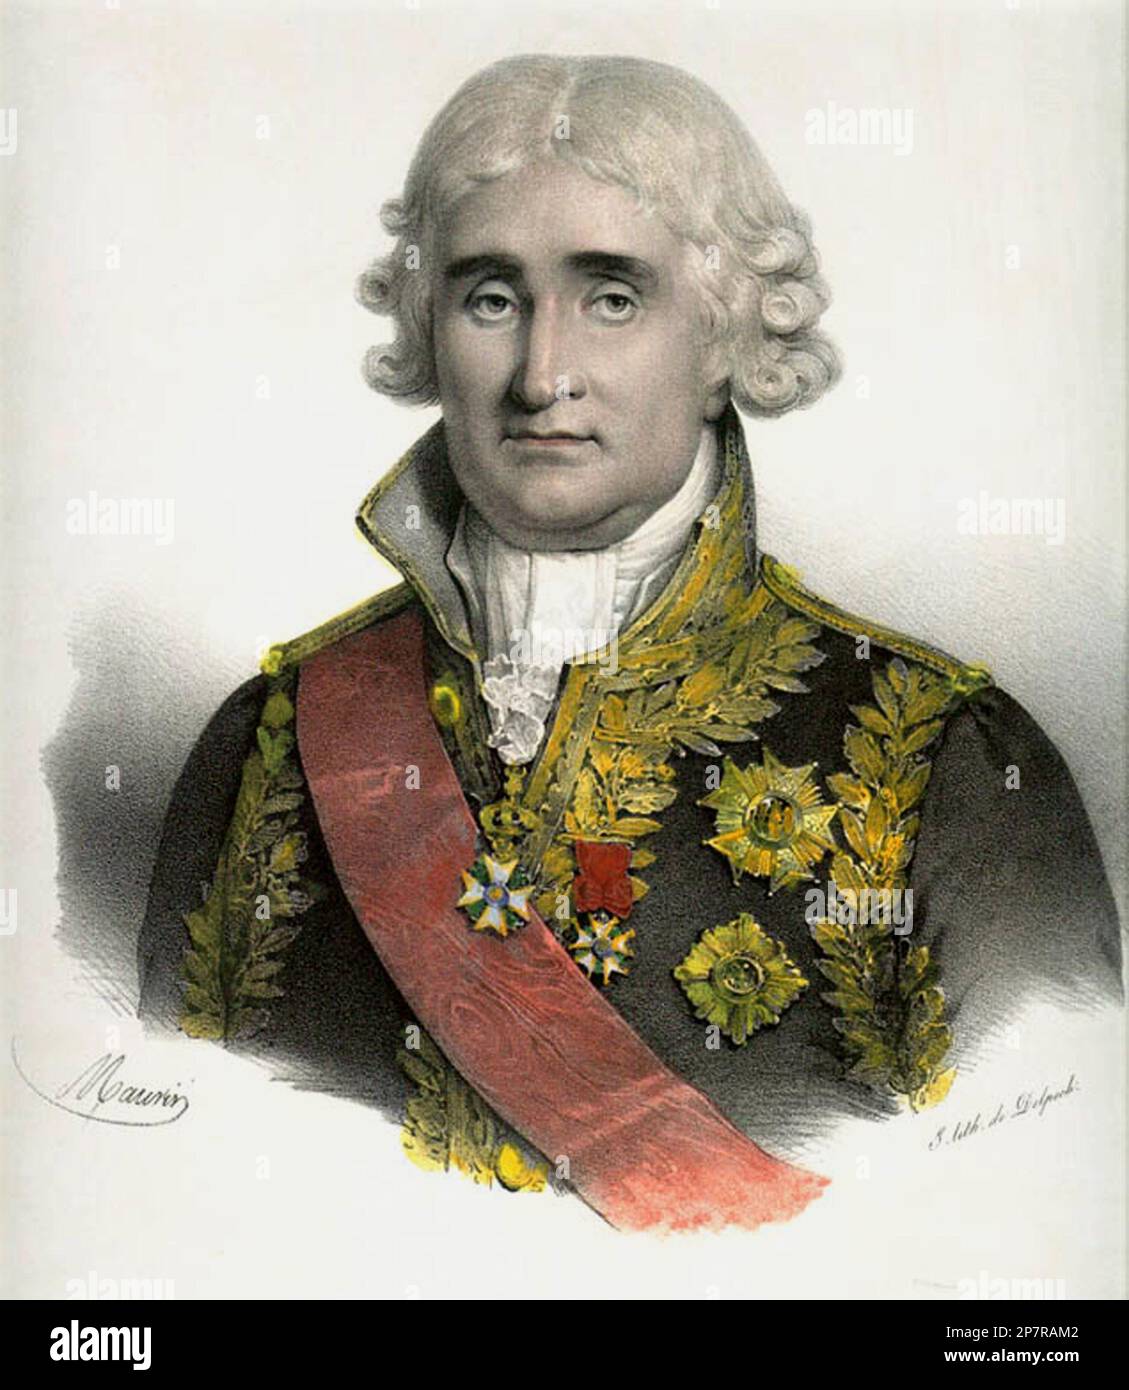 1830 ca : Jean-Jacques Regis de CAMBACERES , duc de Parme ( 1753 - 1824 ) è stato un avvocato e statista francese, meglio ricordato come autore del codice napoleonico, che ancora costituisce la base del diritto civile francese. Cambaceres era omosessuale, ed è ampiamente, ma inesattamente, dato credito per la depenalizzazione dell'omosessualità in Francia. Ritratto dell'artista Nicolas Eustache Maurin ( 1799 - 1850 ), litografia di Delpech, pubblicata a Parigi intorno al 1830 - CODICE NAPOLEONICO - NAPOLEONE i BONAPARTE - NOBILTÀ - NOBILI - NOBILTa' - REALI - ROYALTY - Napoleone - Buonaparte - incisione - incisione - colletto Foto Stock